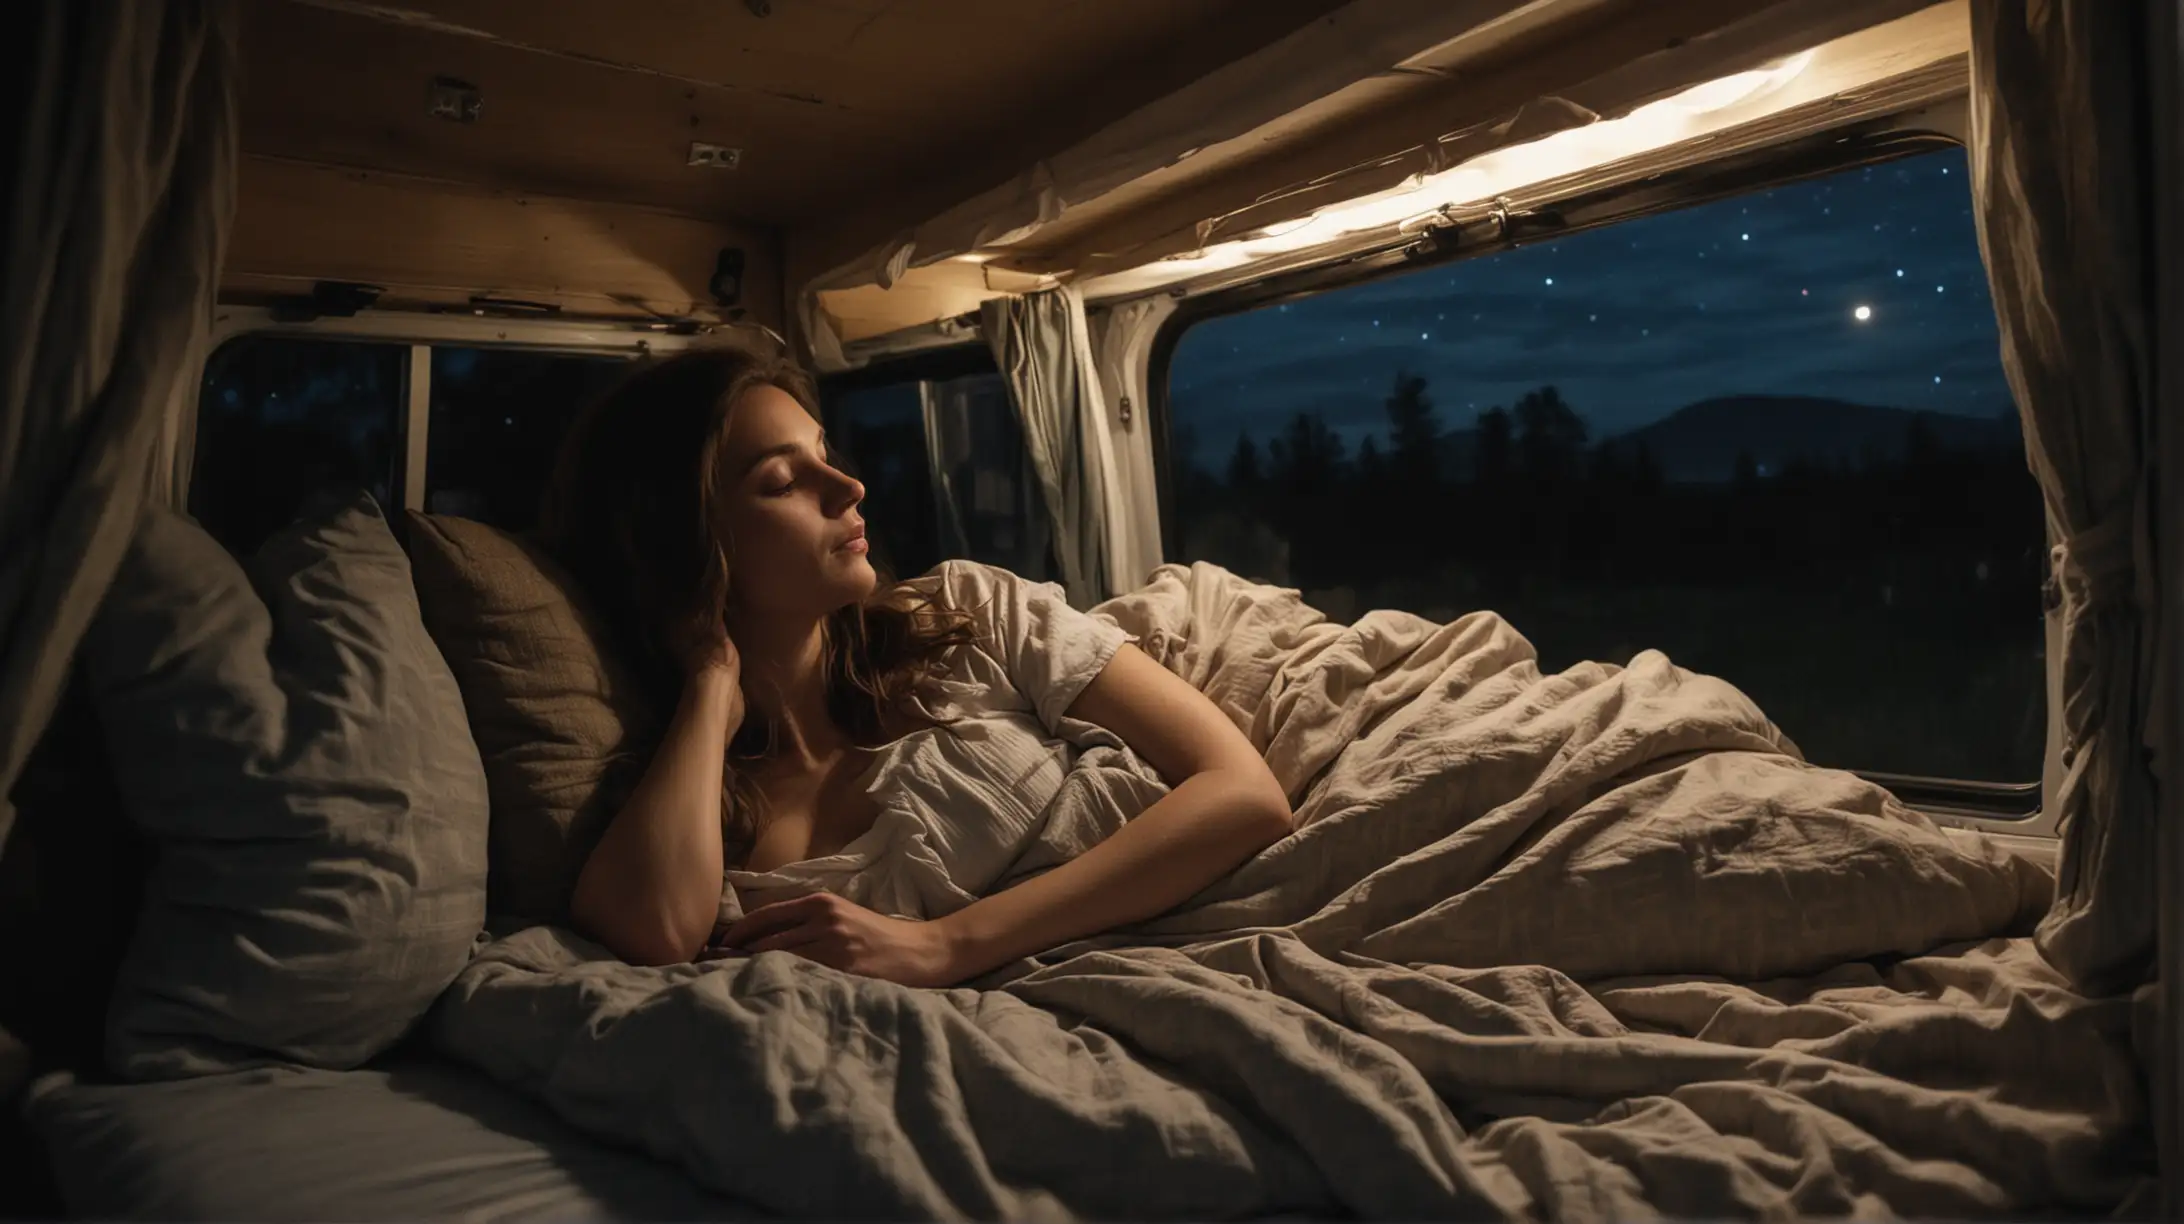 Tranquil Night in a Camper Van Serene Woman Sleeping